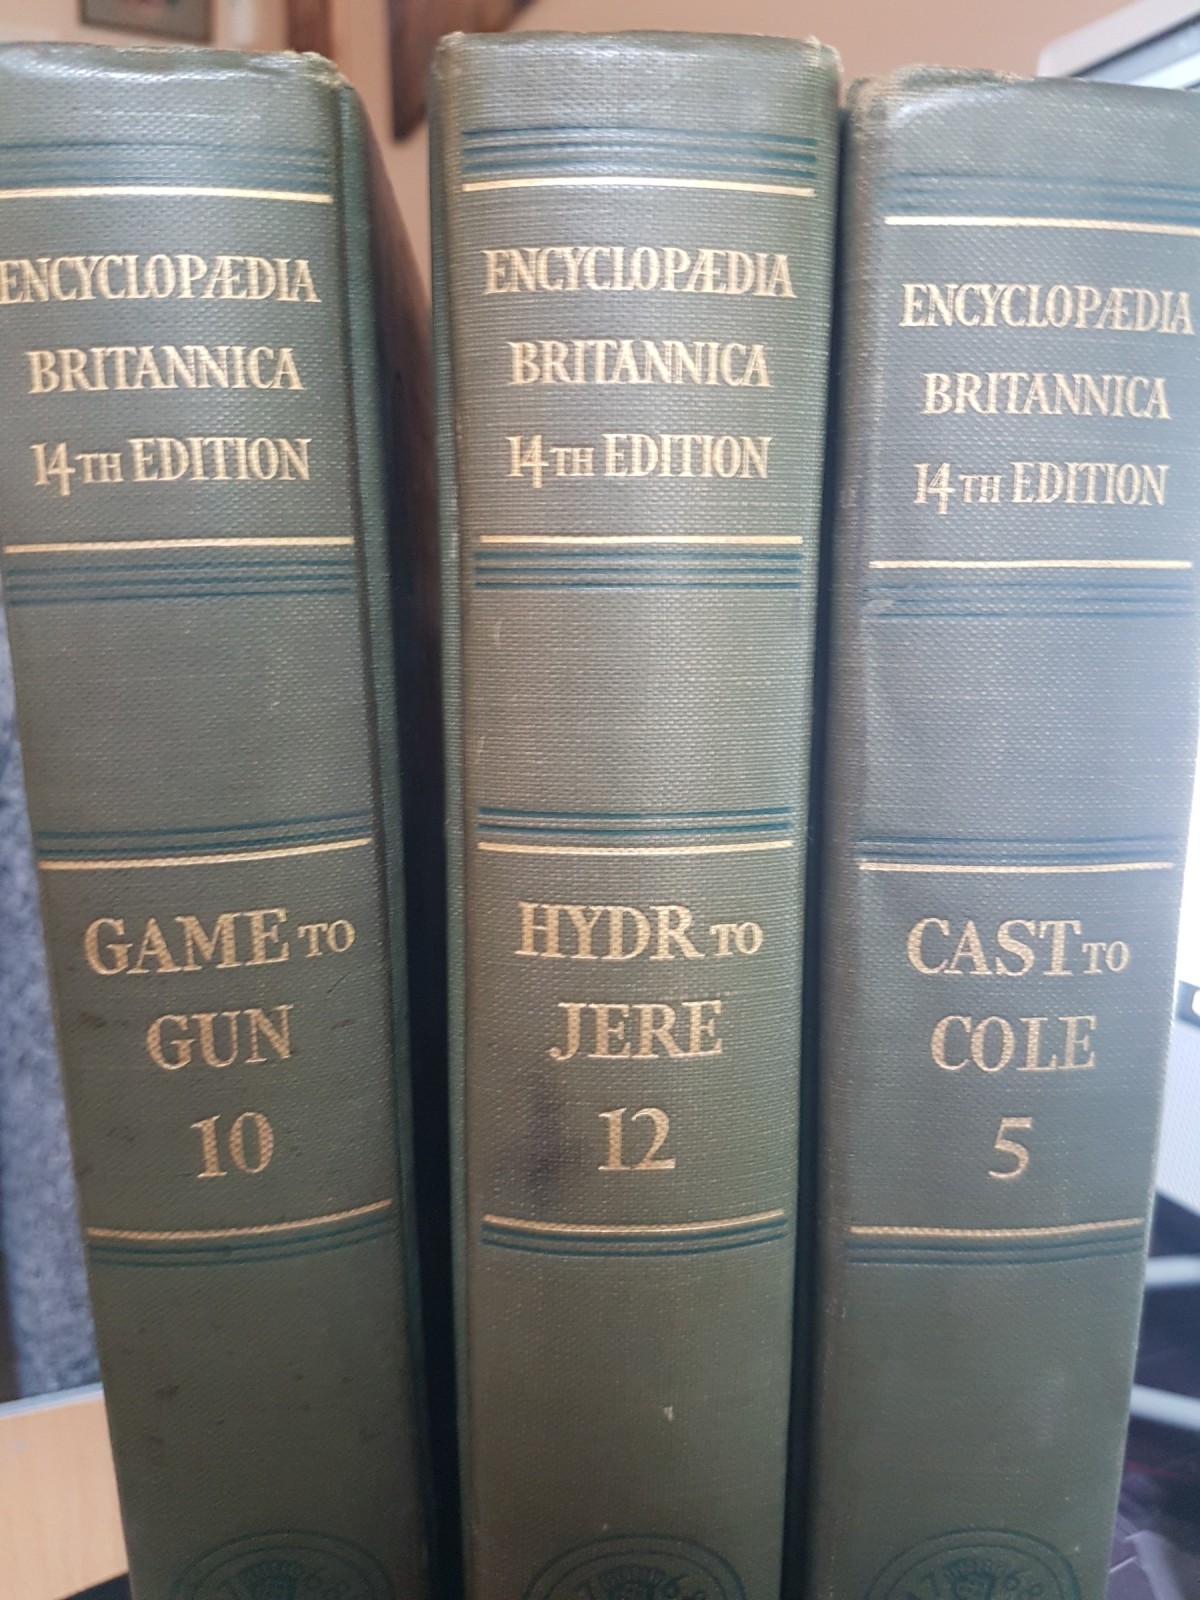 encyclopedia britannica 11th edition value